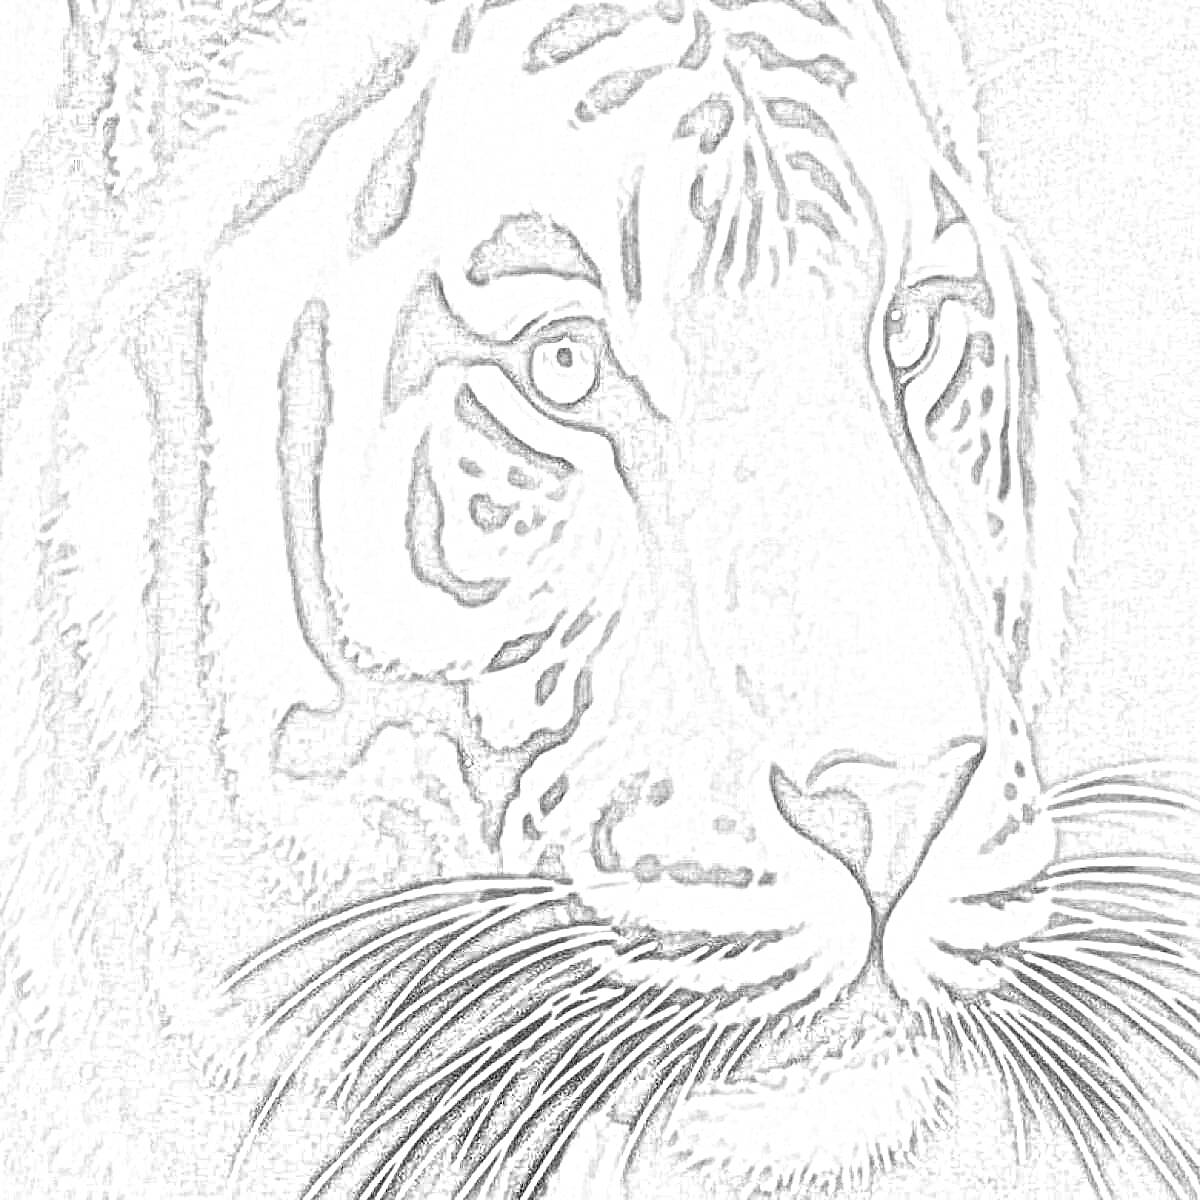 Раскраска Тигр крупным планом. Голова тигра с полосатым рисунком и длинными усами